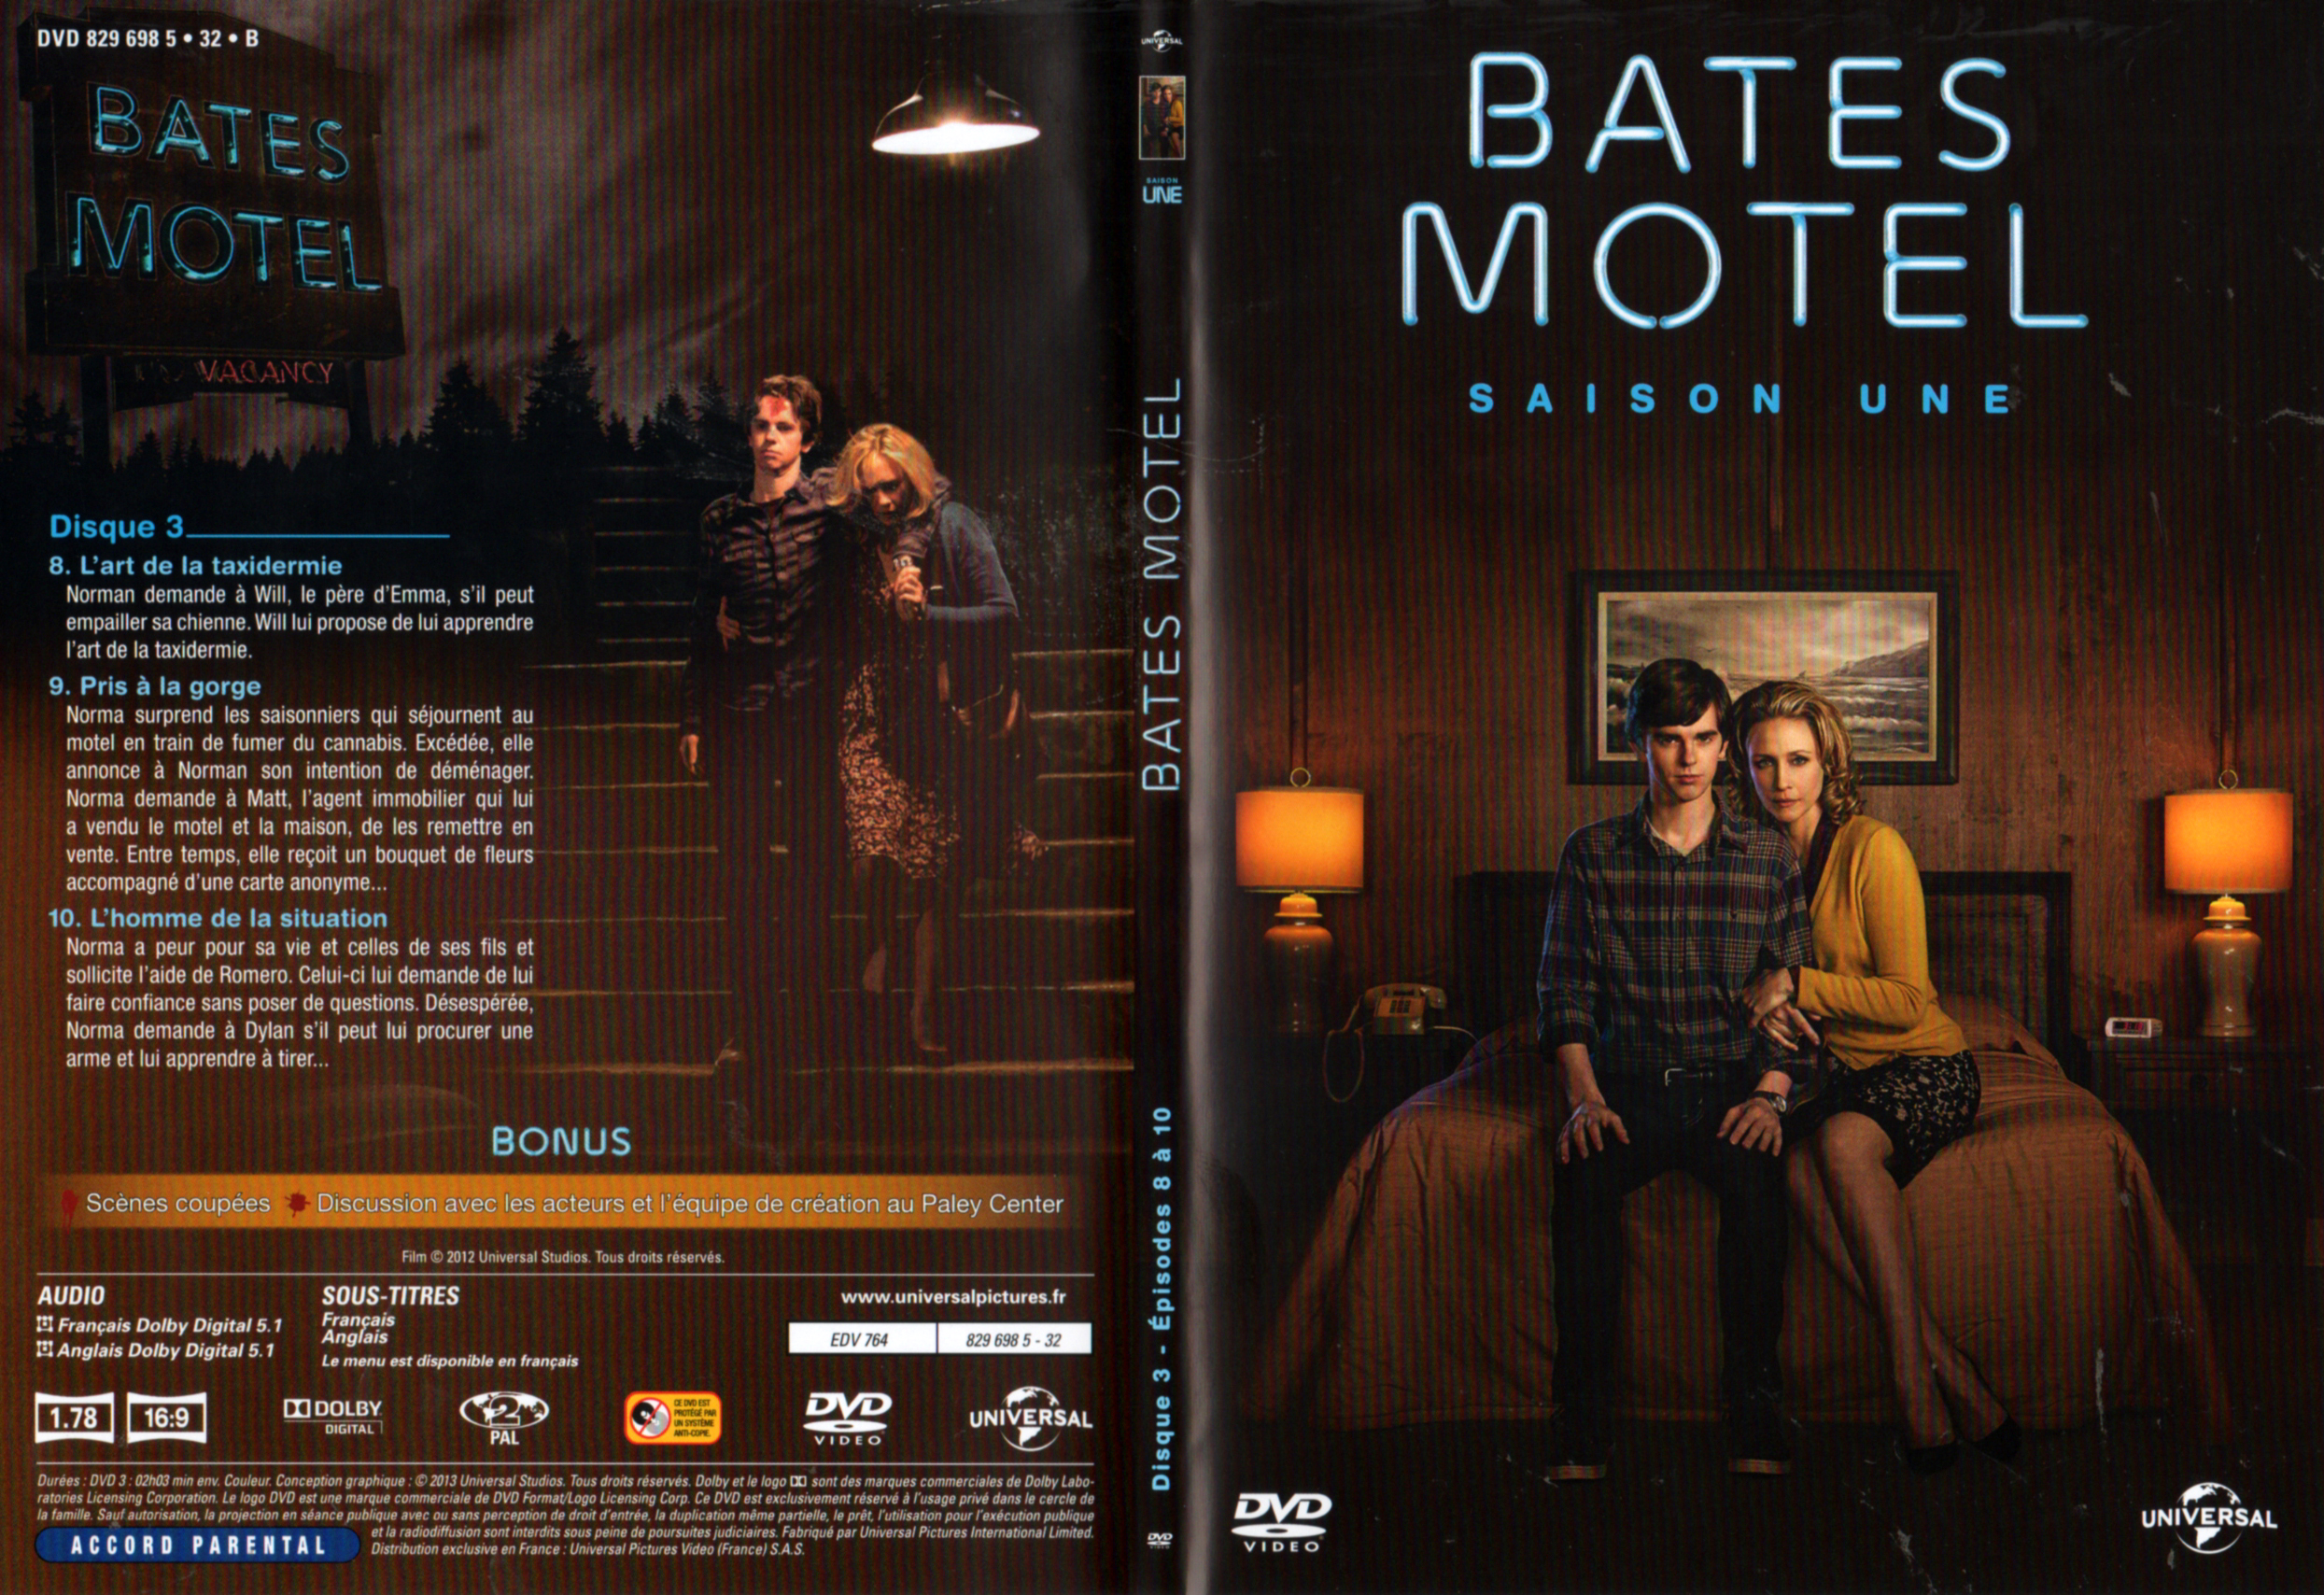 Jaquette DVD Bates motel Saison 1 DVD 2